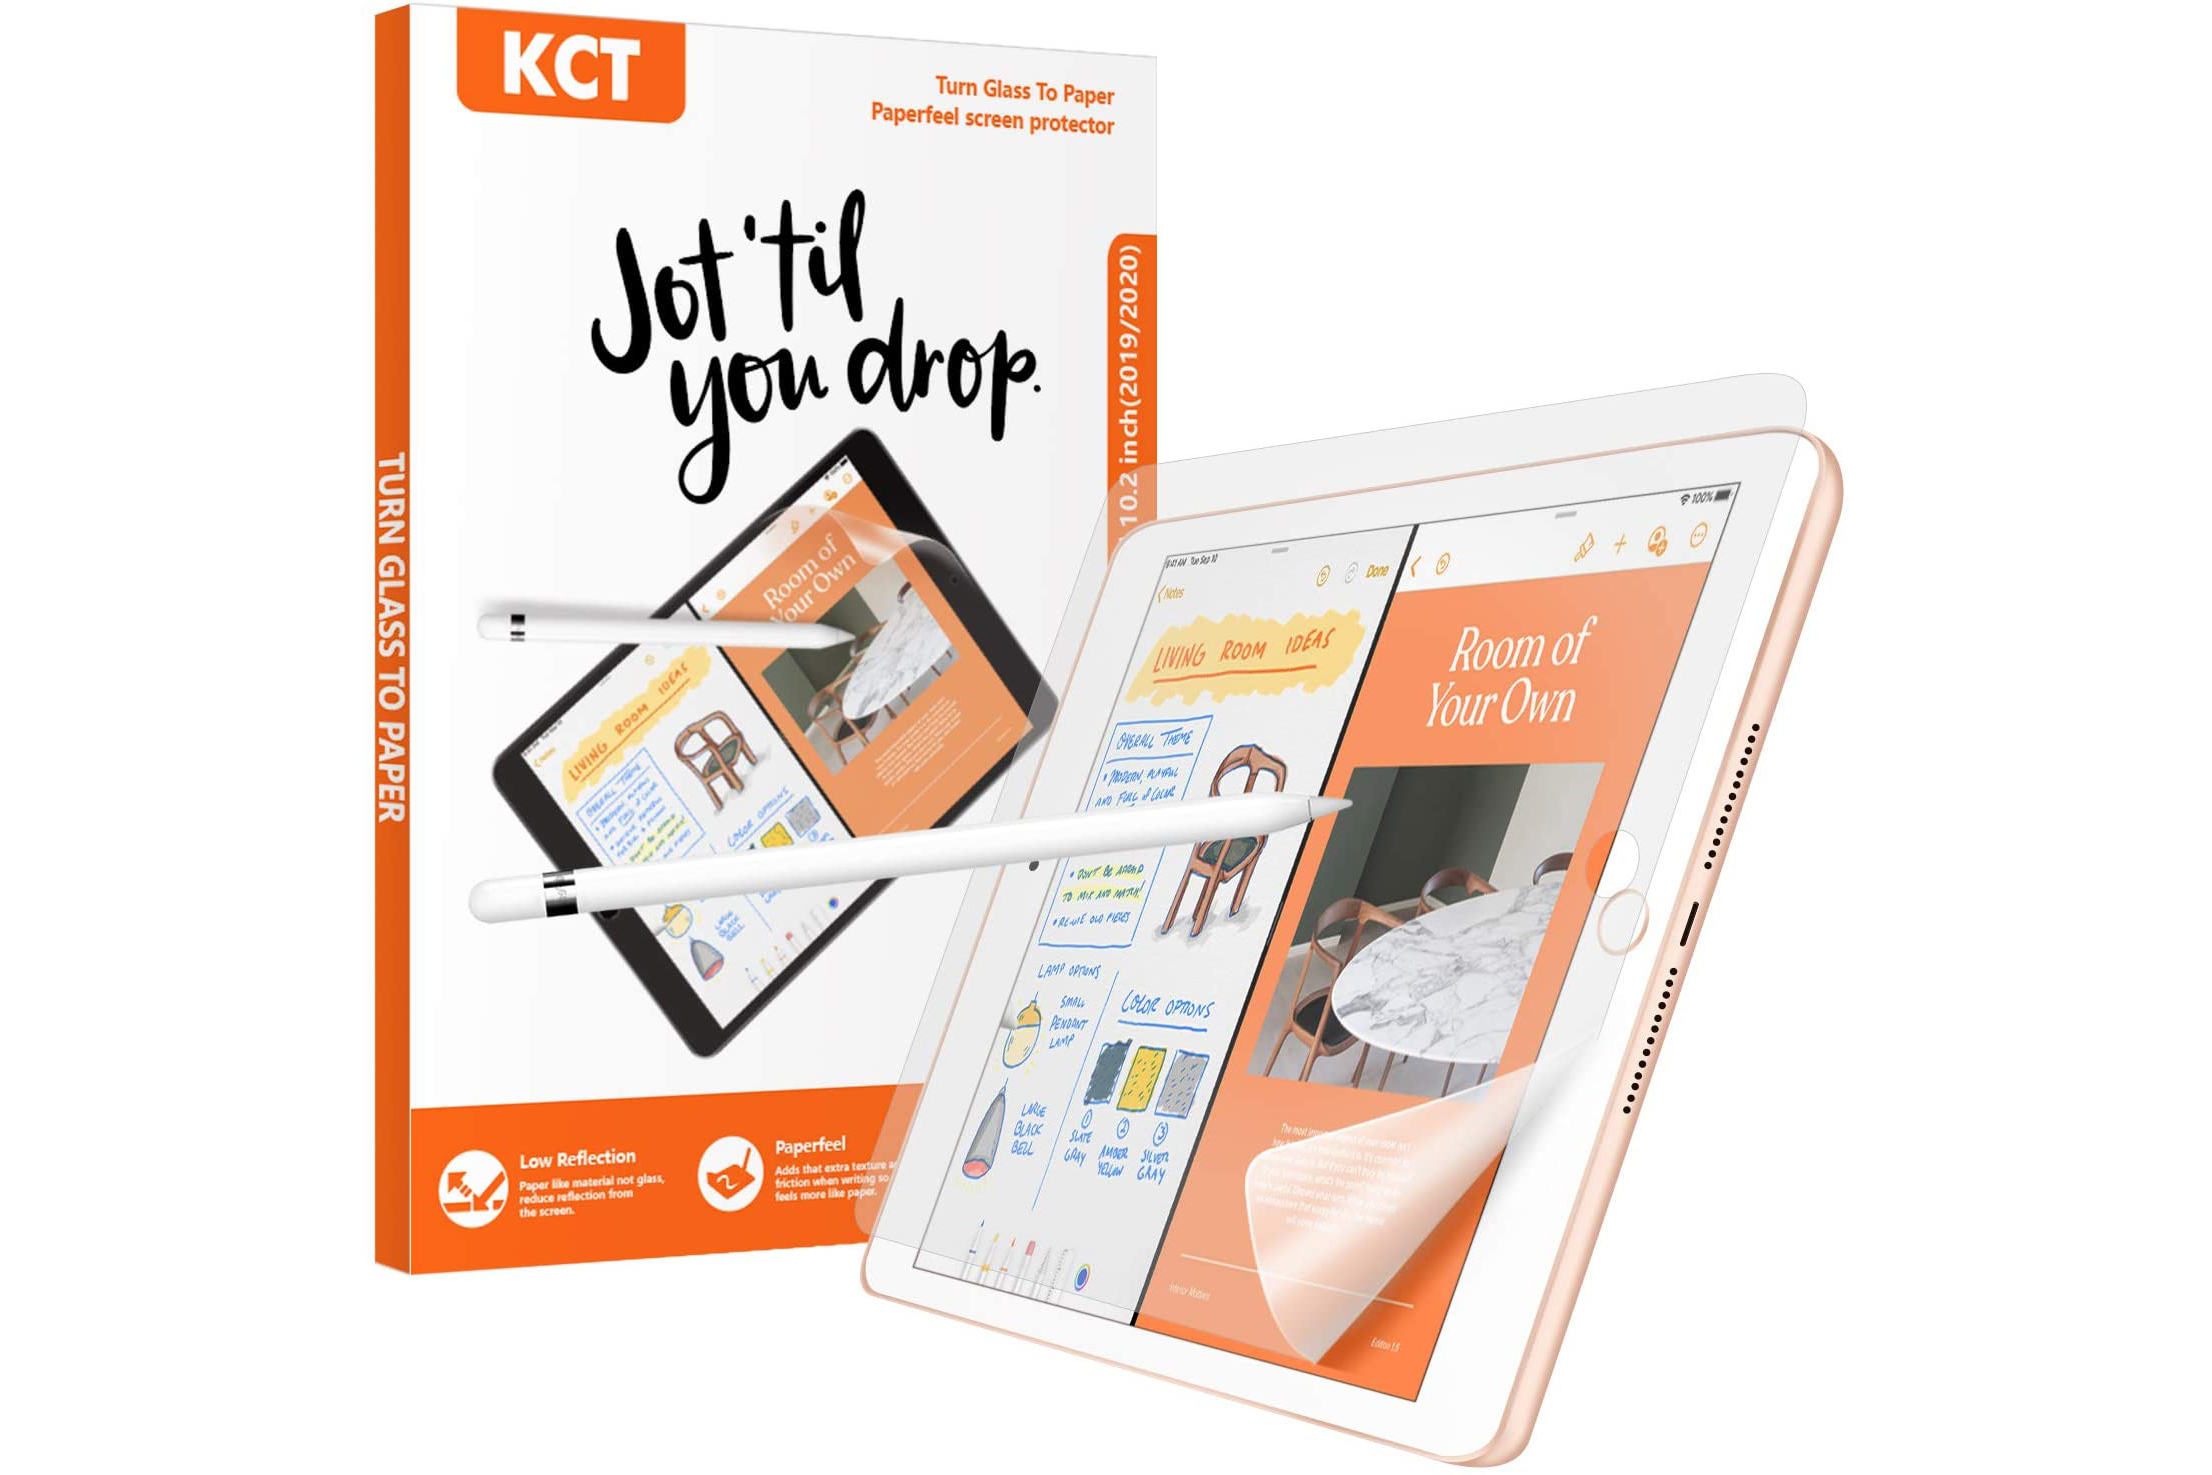 Protector de pantalla KCT Paperfeel con iPad y empaque.